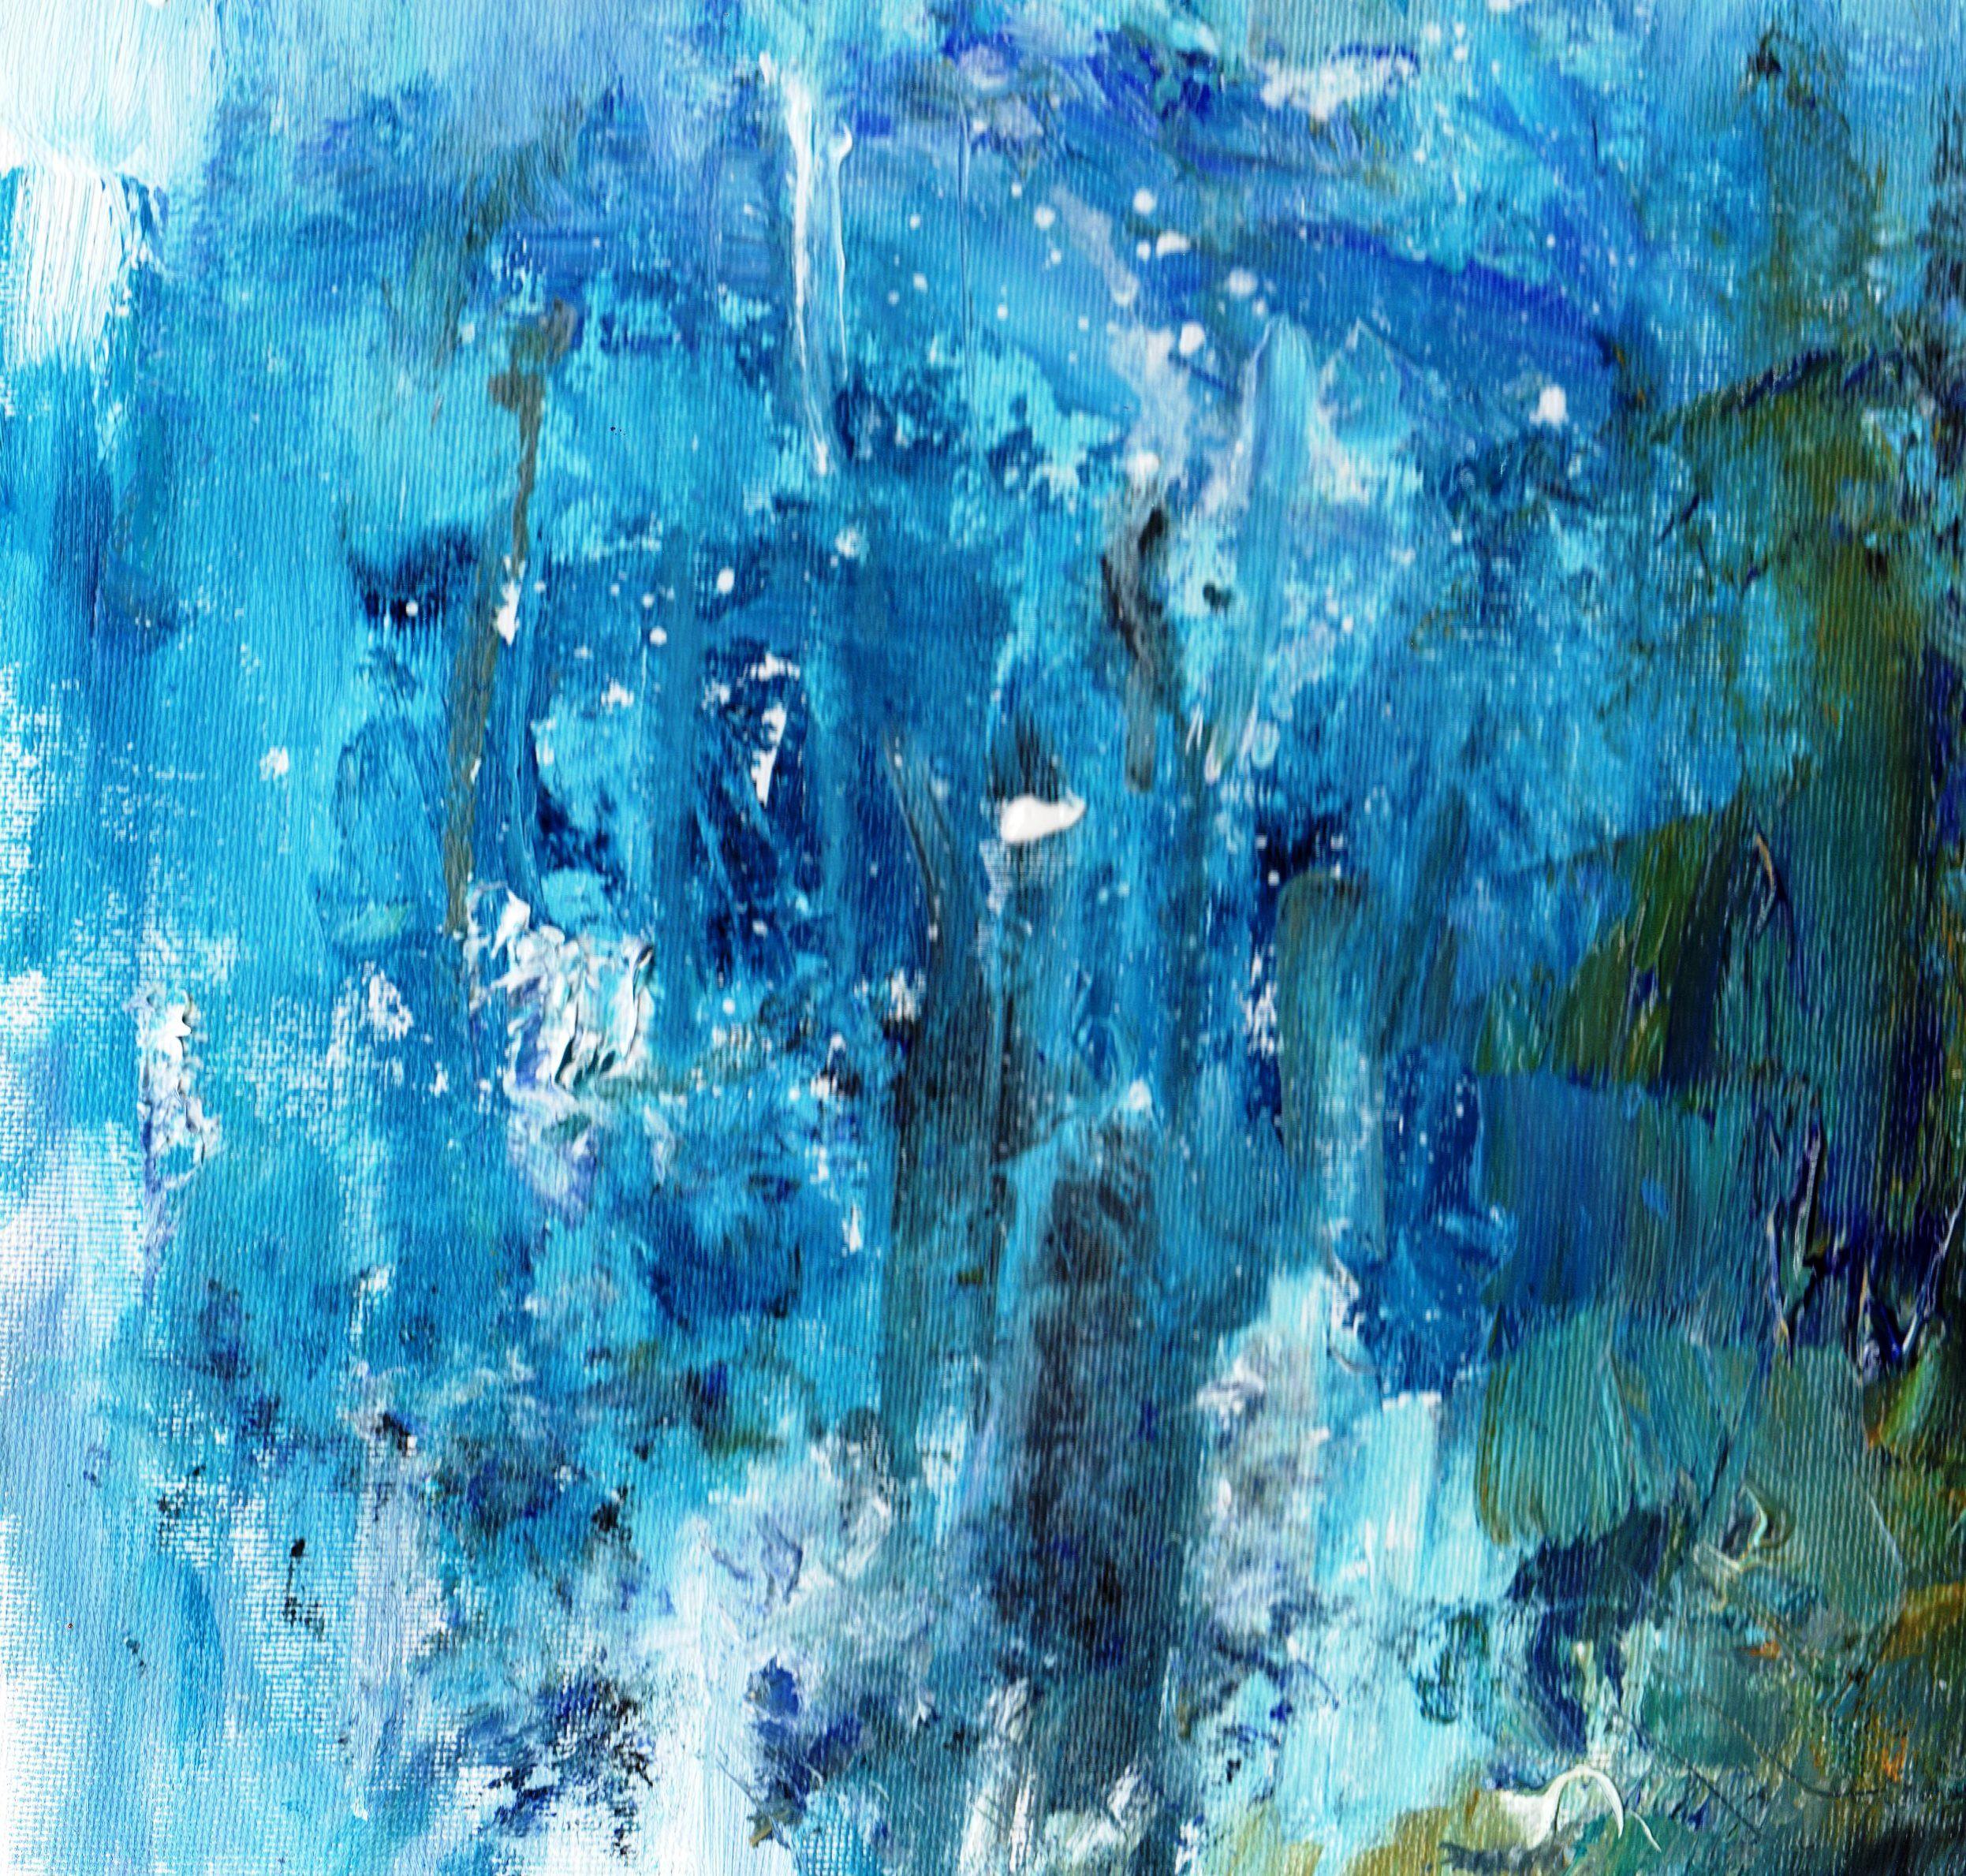 Mer abstraite - The Deep, peinture, huile sur toile - Painting de Zoe Elizabeth Norman